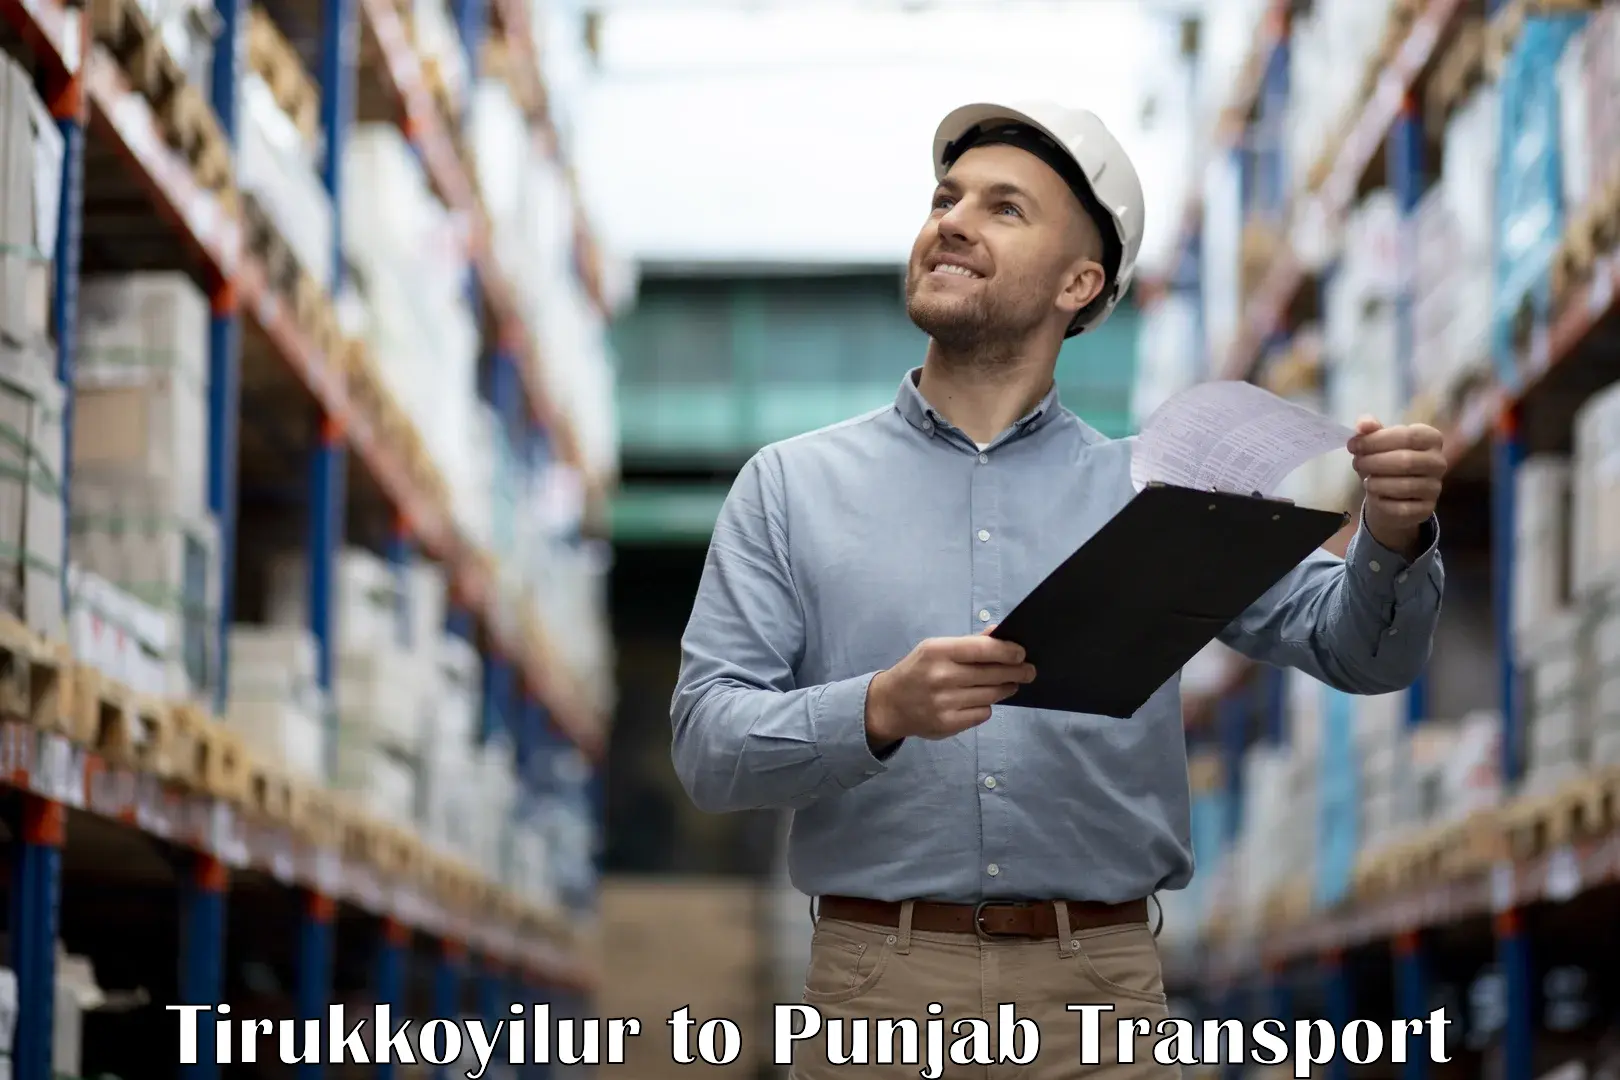 Bike shipping service Tirukkoyilur to Punjab